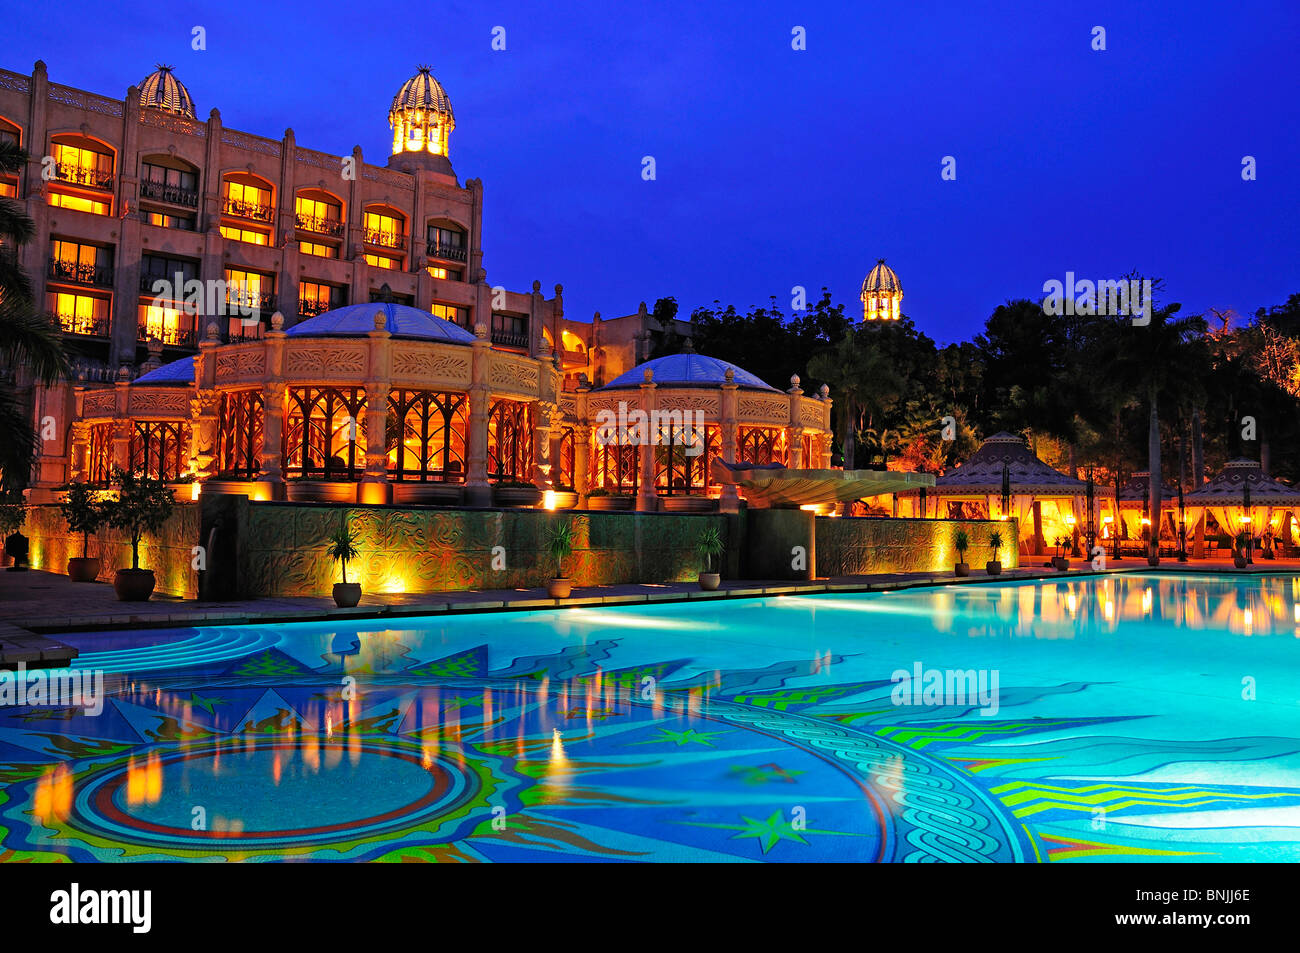 Entrata al Palazzo della Città Perduta Sun City Entertainment Theme Park a nord-ovest Il Sud Africa acqua di piscina illuminata di notte Foto Stock